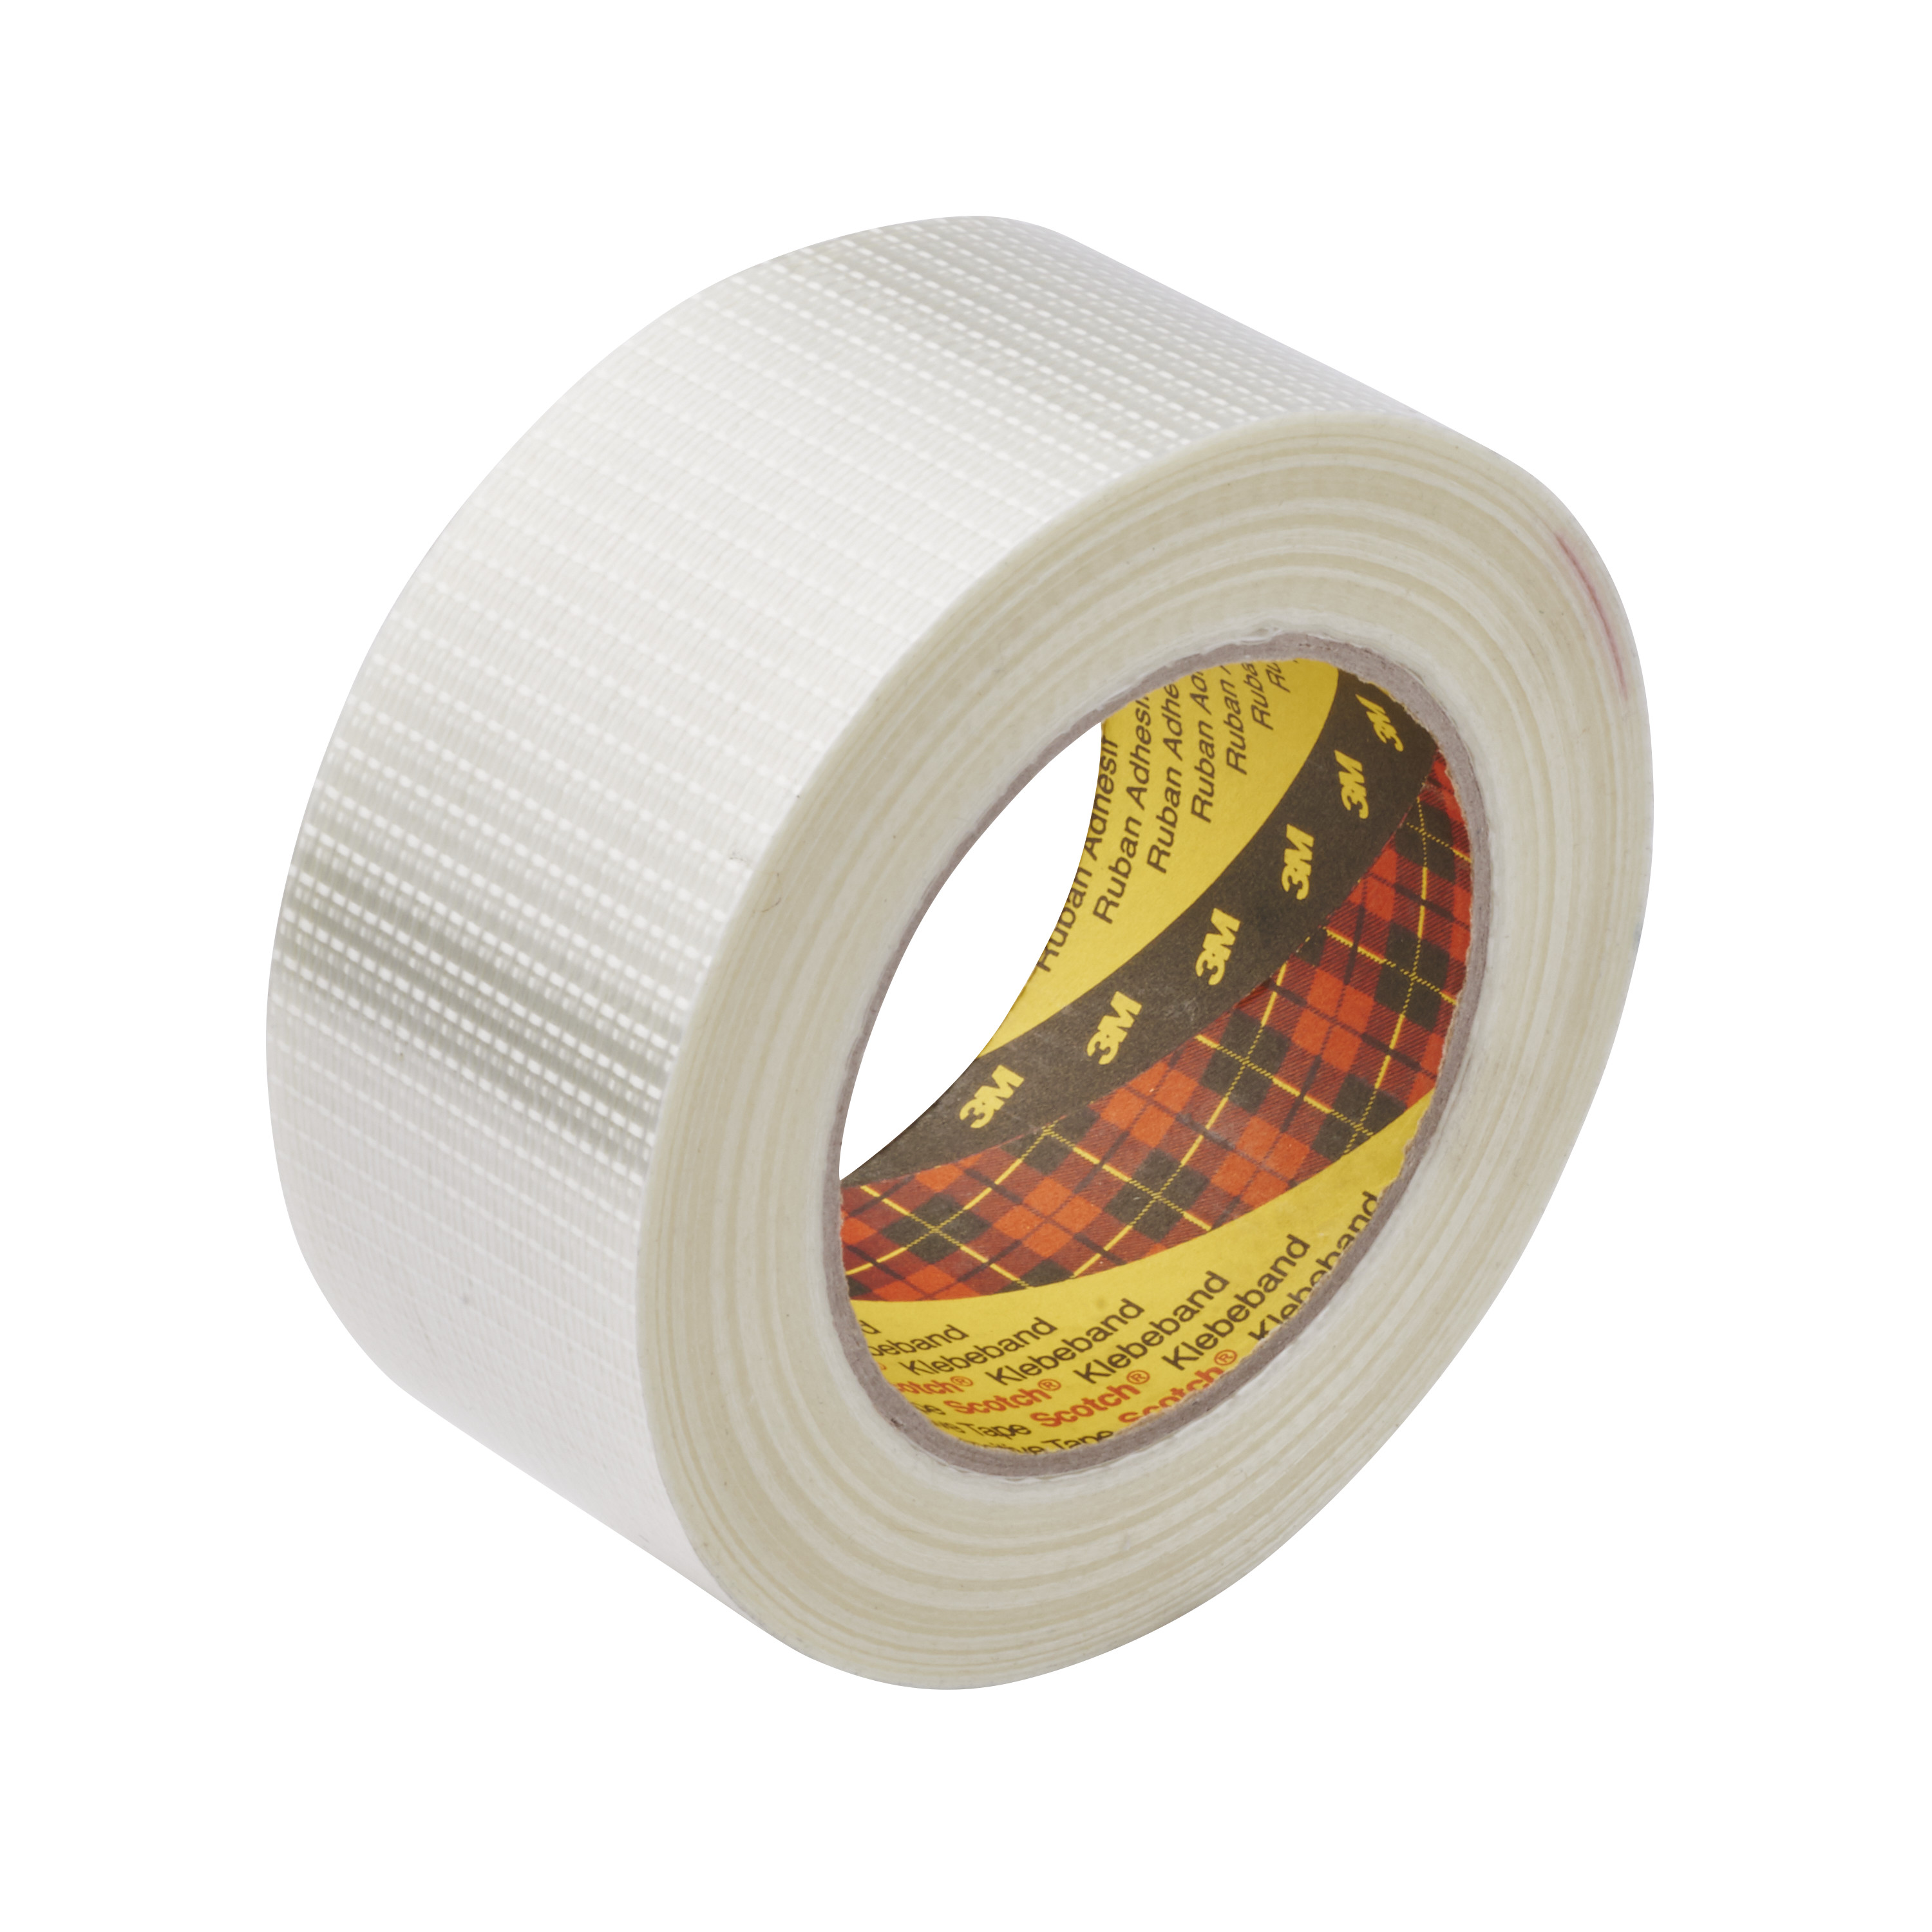 Scotch® Bi-Directional Filament Tape 8959, Clear, 36 mm x 55 m, 5.7 mil,
24 per case